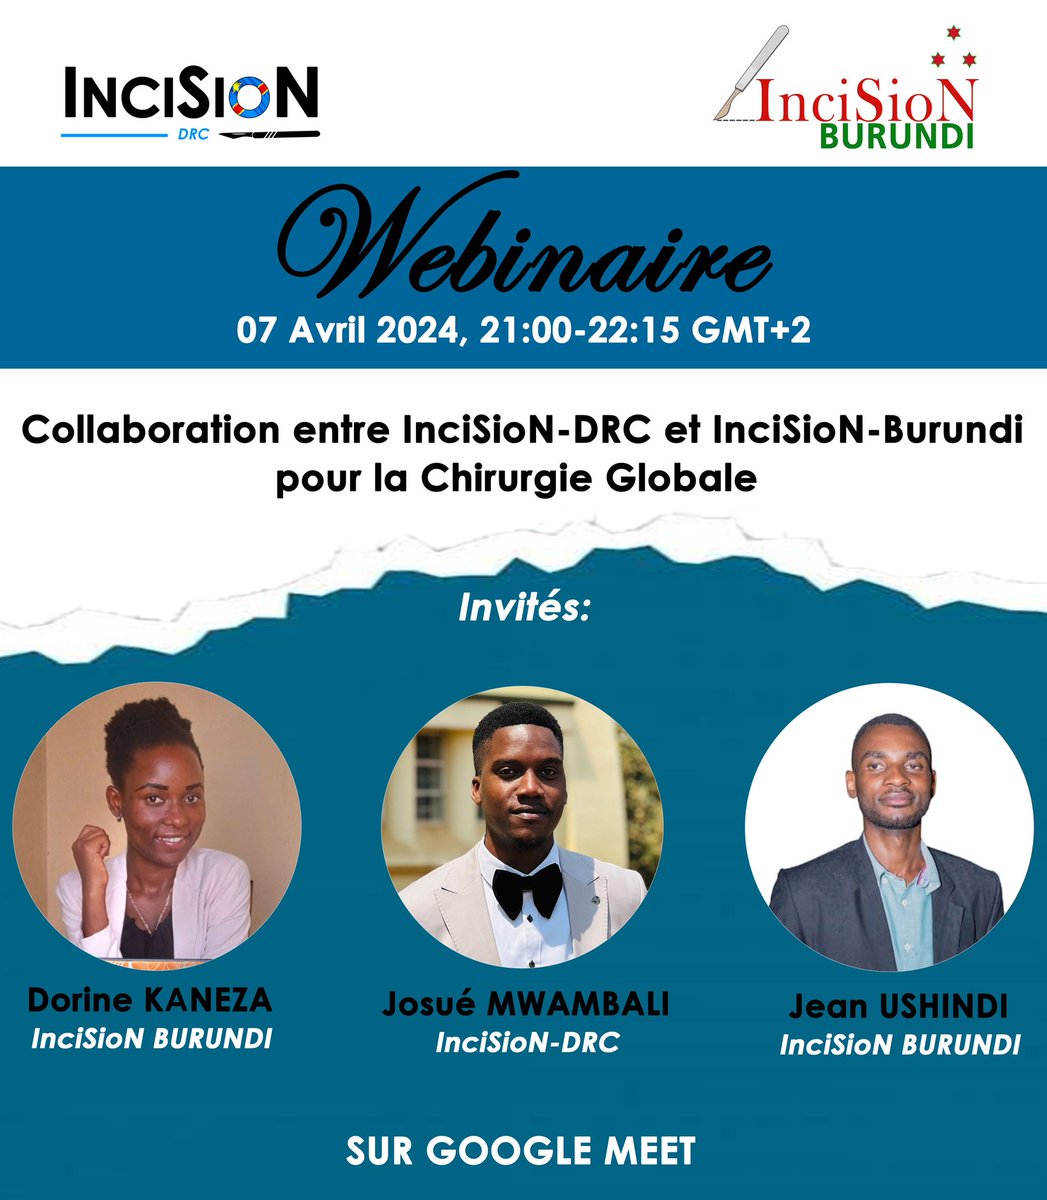 Objectifs : 
L’épanouissement de InciSioN DRC
Collaboration durable entre InciSioN DRC et InciSioN Burundi dans la recherche, le mentorat
Faciliter le networking entre les membres des deux groupes de travail
meet.google.com/bos-edfz-kfz
Welcome InciSion